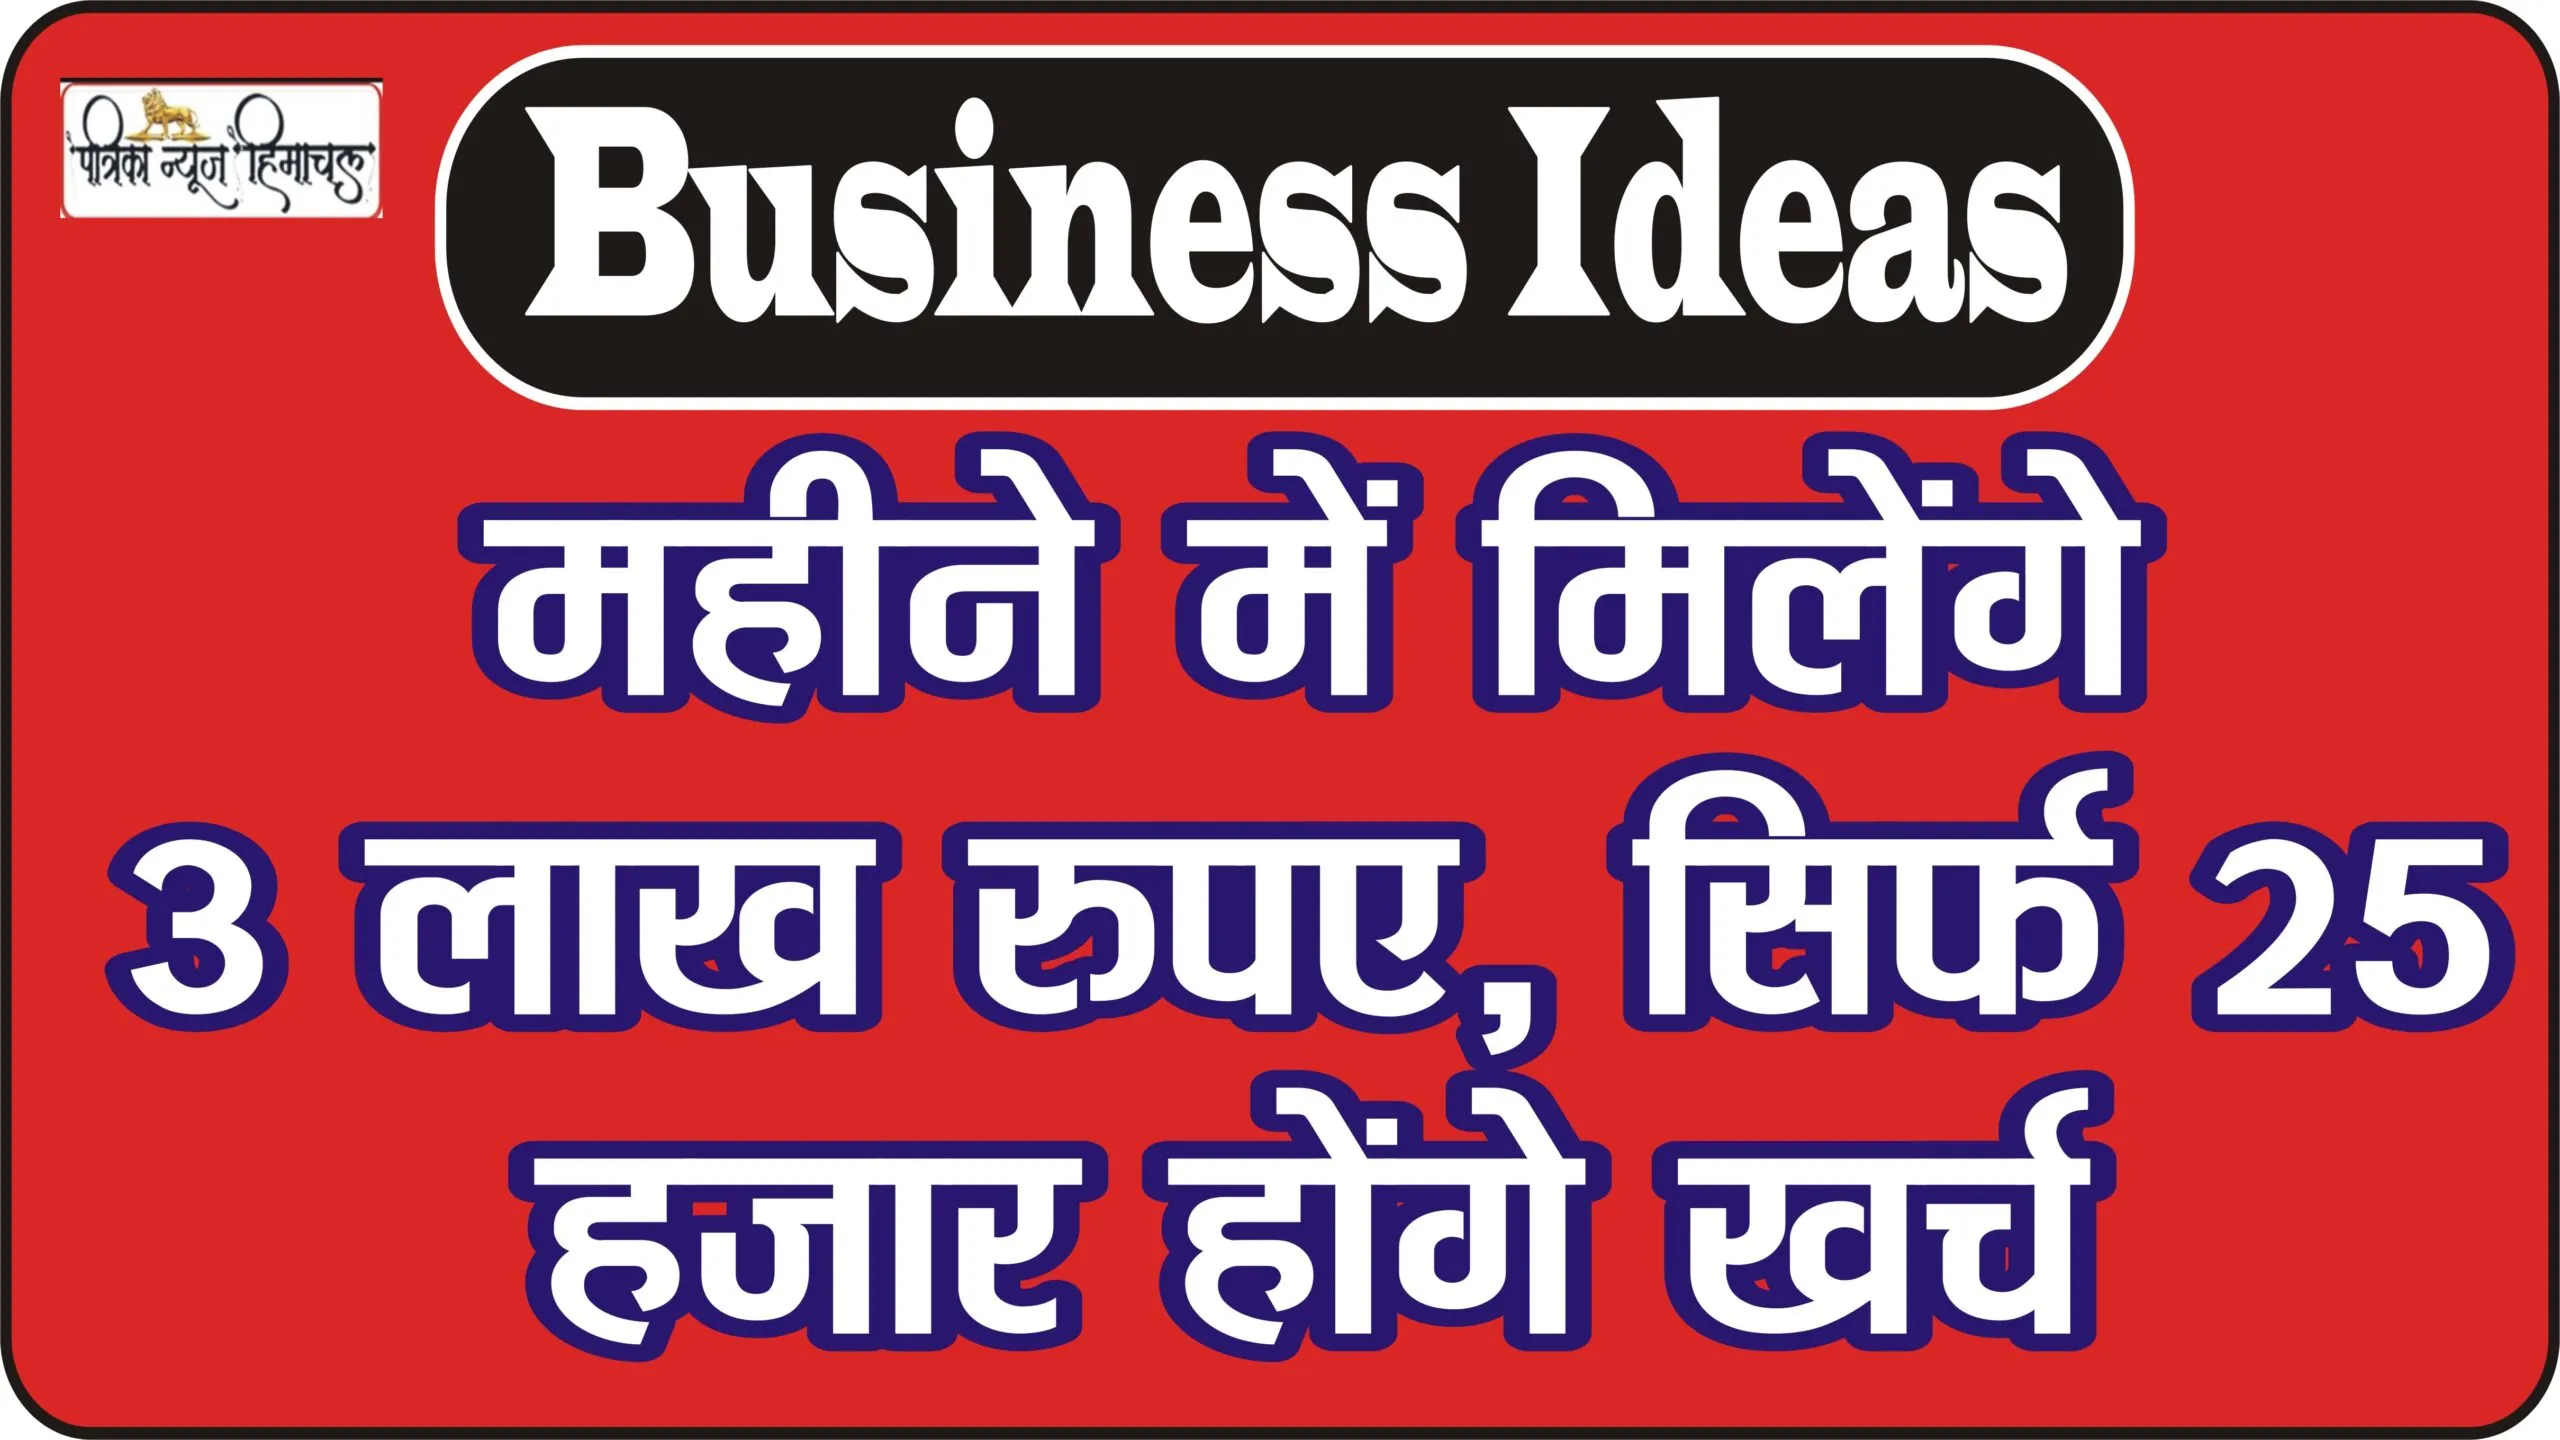 Best Business Ideas || कमाई वाला बिजनेस: महीने में मिलेंगे 3 लाख रुपए, सिर्फ 25 हजार होंगे खर्च, केंद्र सरकार से भी मिलेगी 50% सब्सिडी